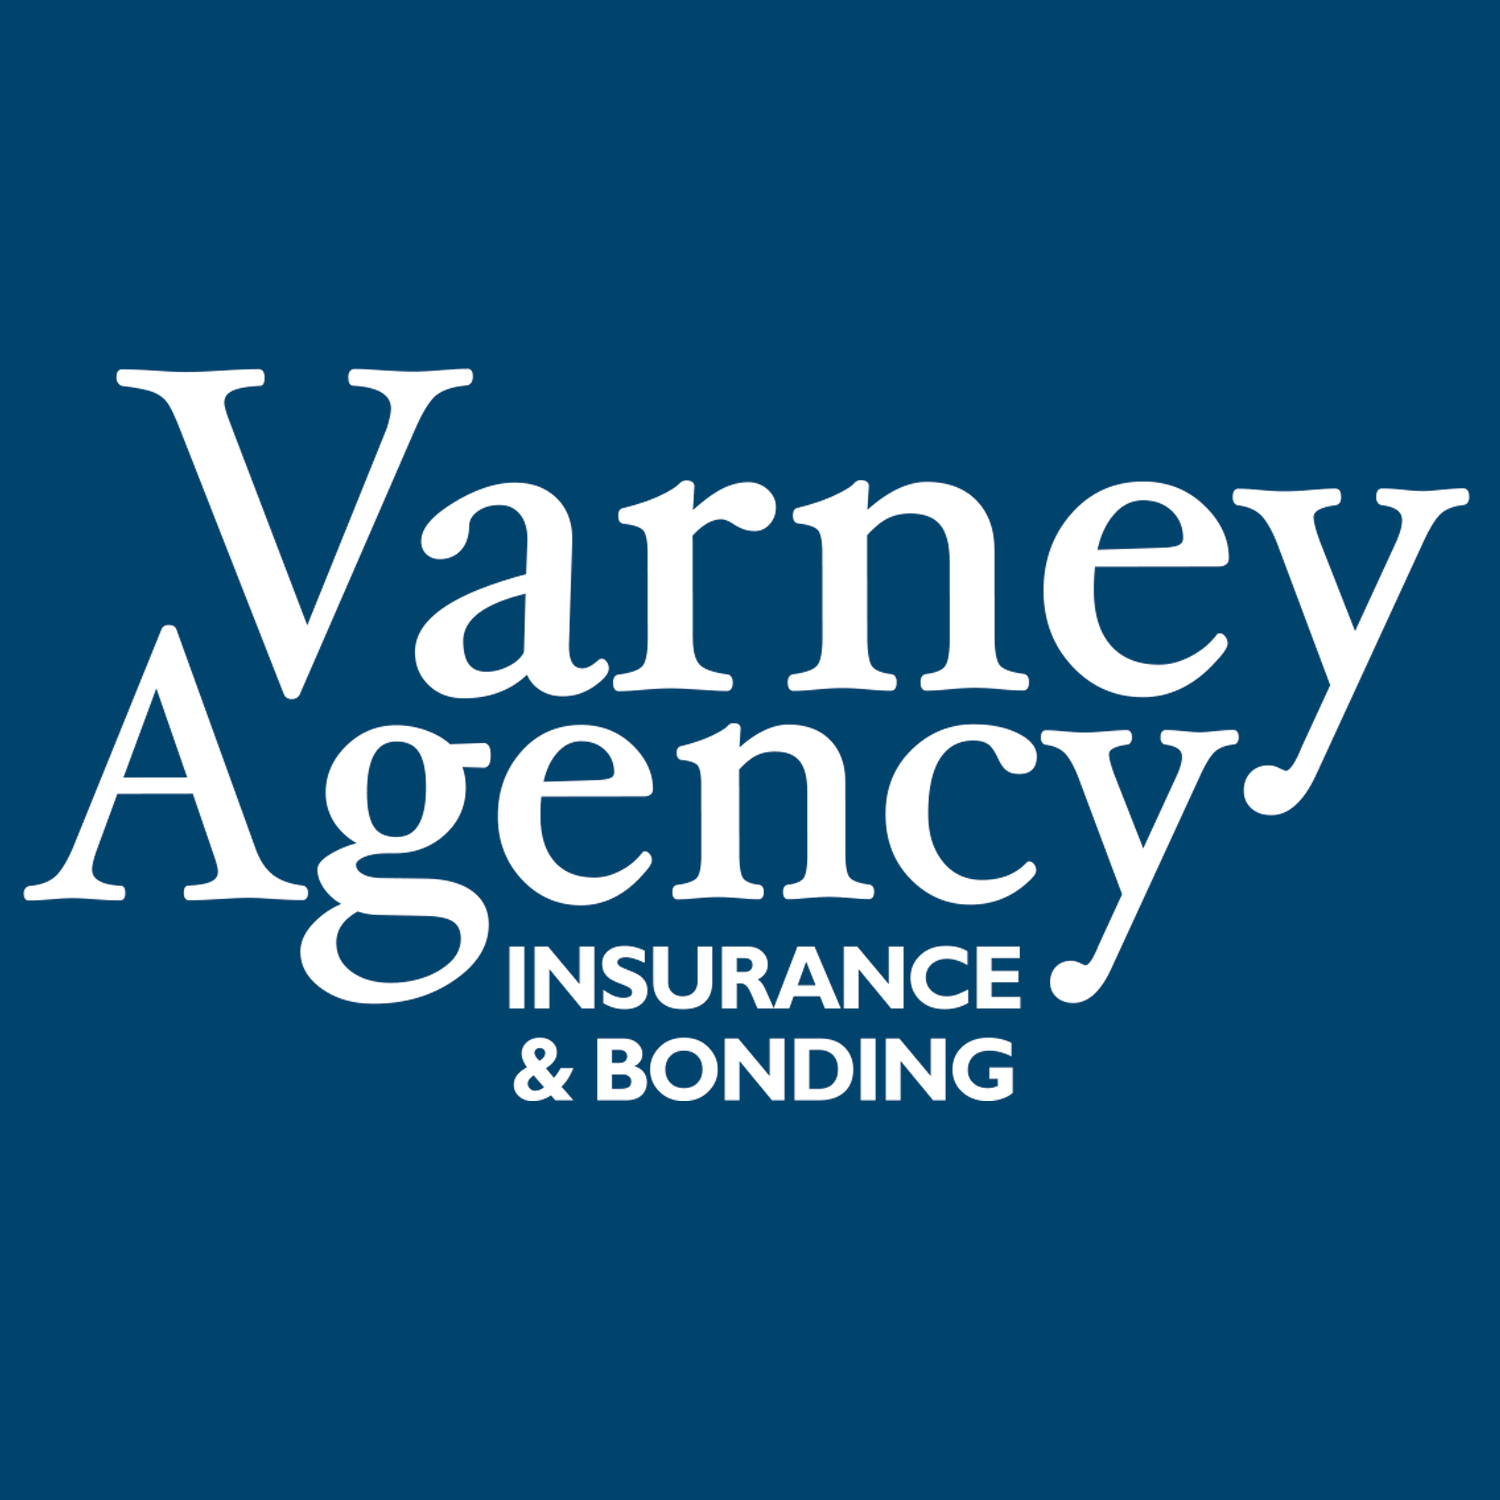 Varney Agency | Insurance & Bonding